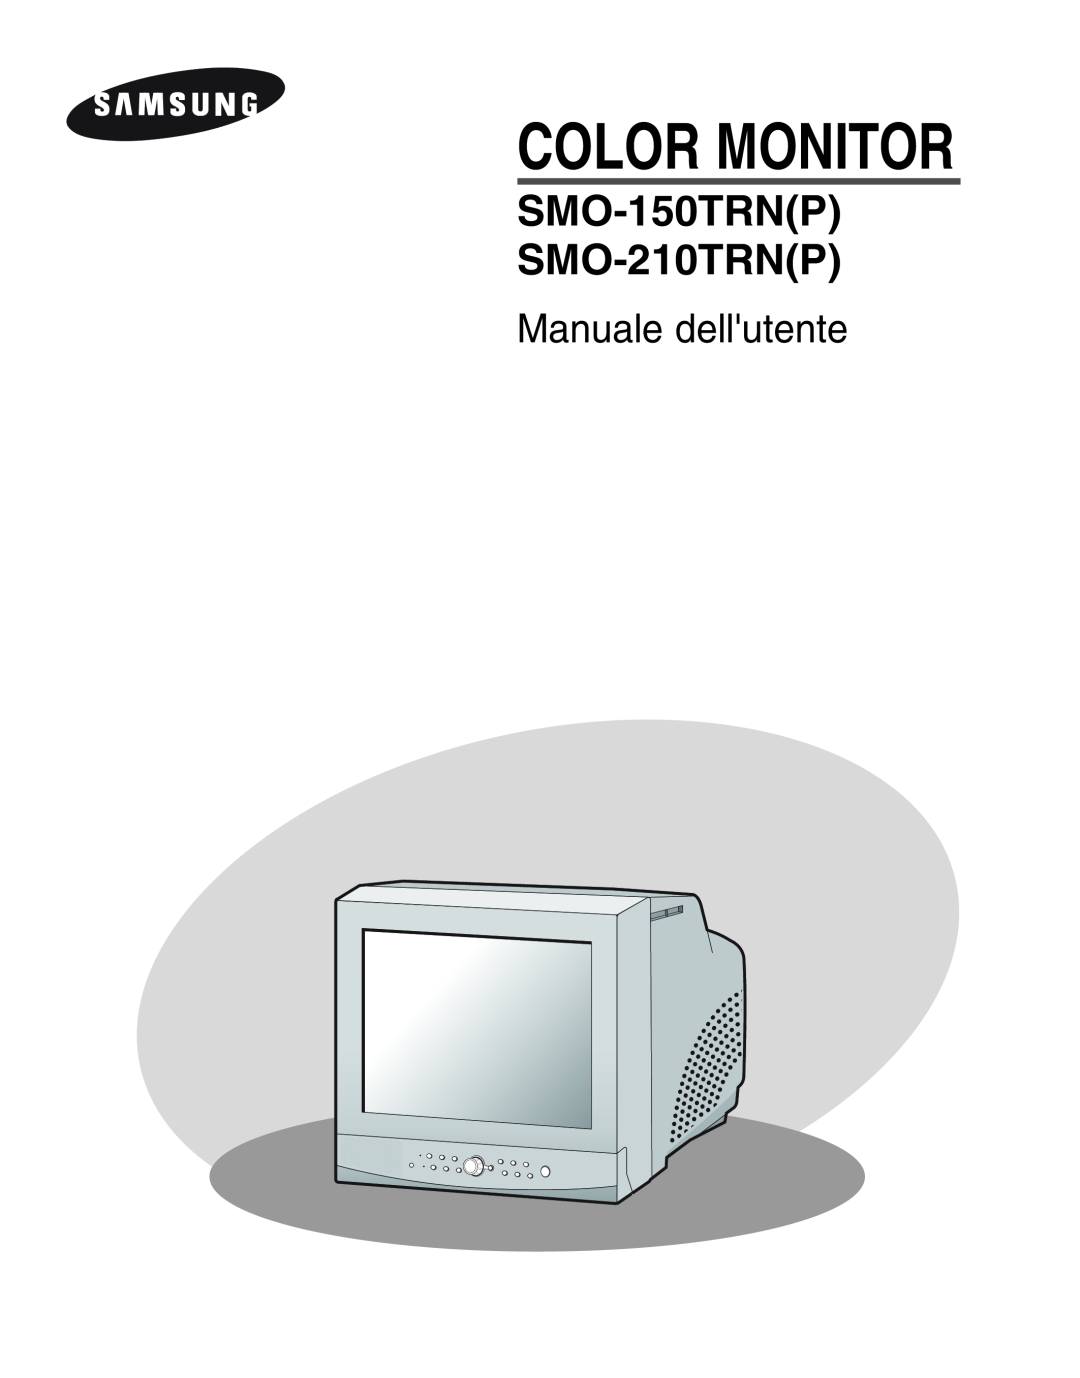 Samsung SMO-210MP/UMG, SMO-210TRP manual Manuale dellutente, Color Monitor, SMO-150TRNP SMO-210TRNP 